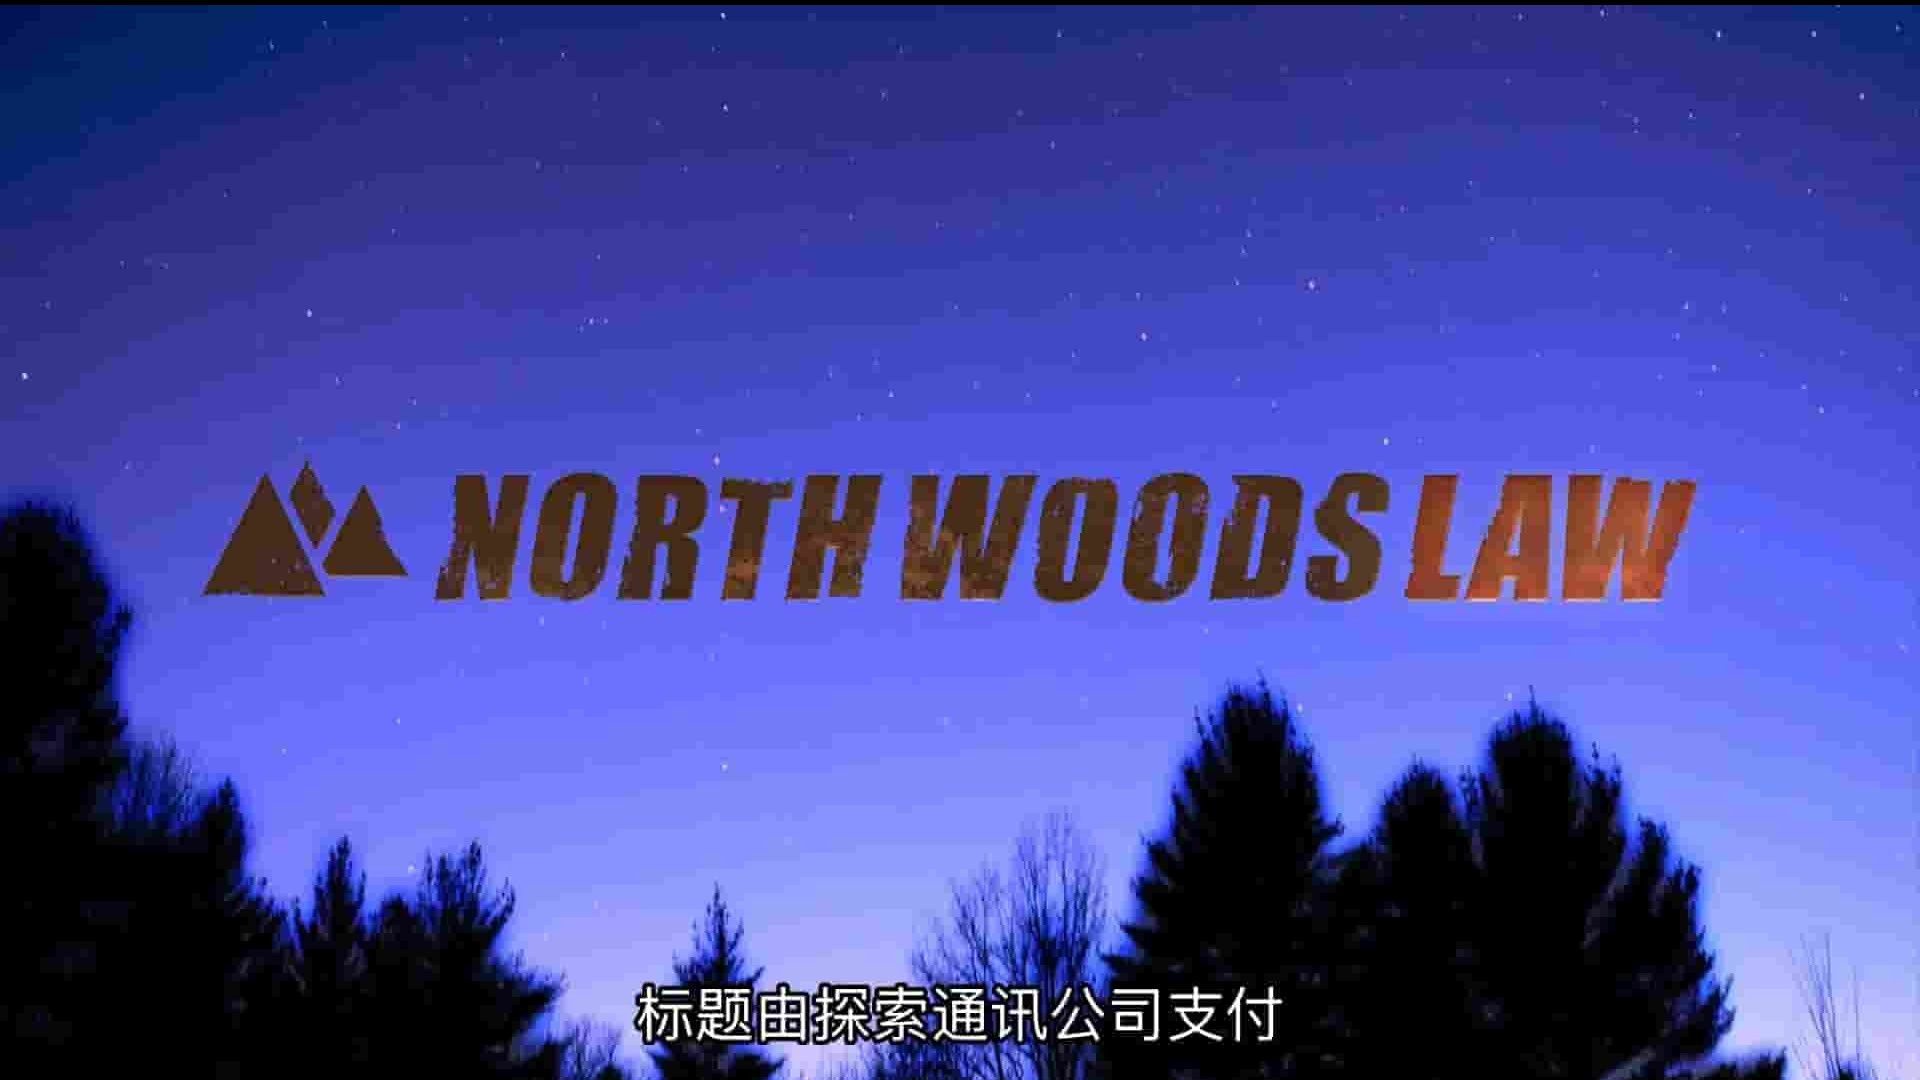 探索频道《北森林保育战 North Woods Law》第1-5季全52集 英语中字 1080P高清网盘下载